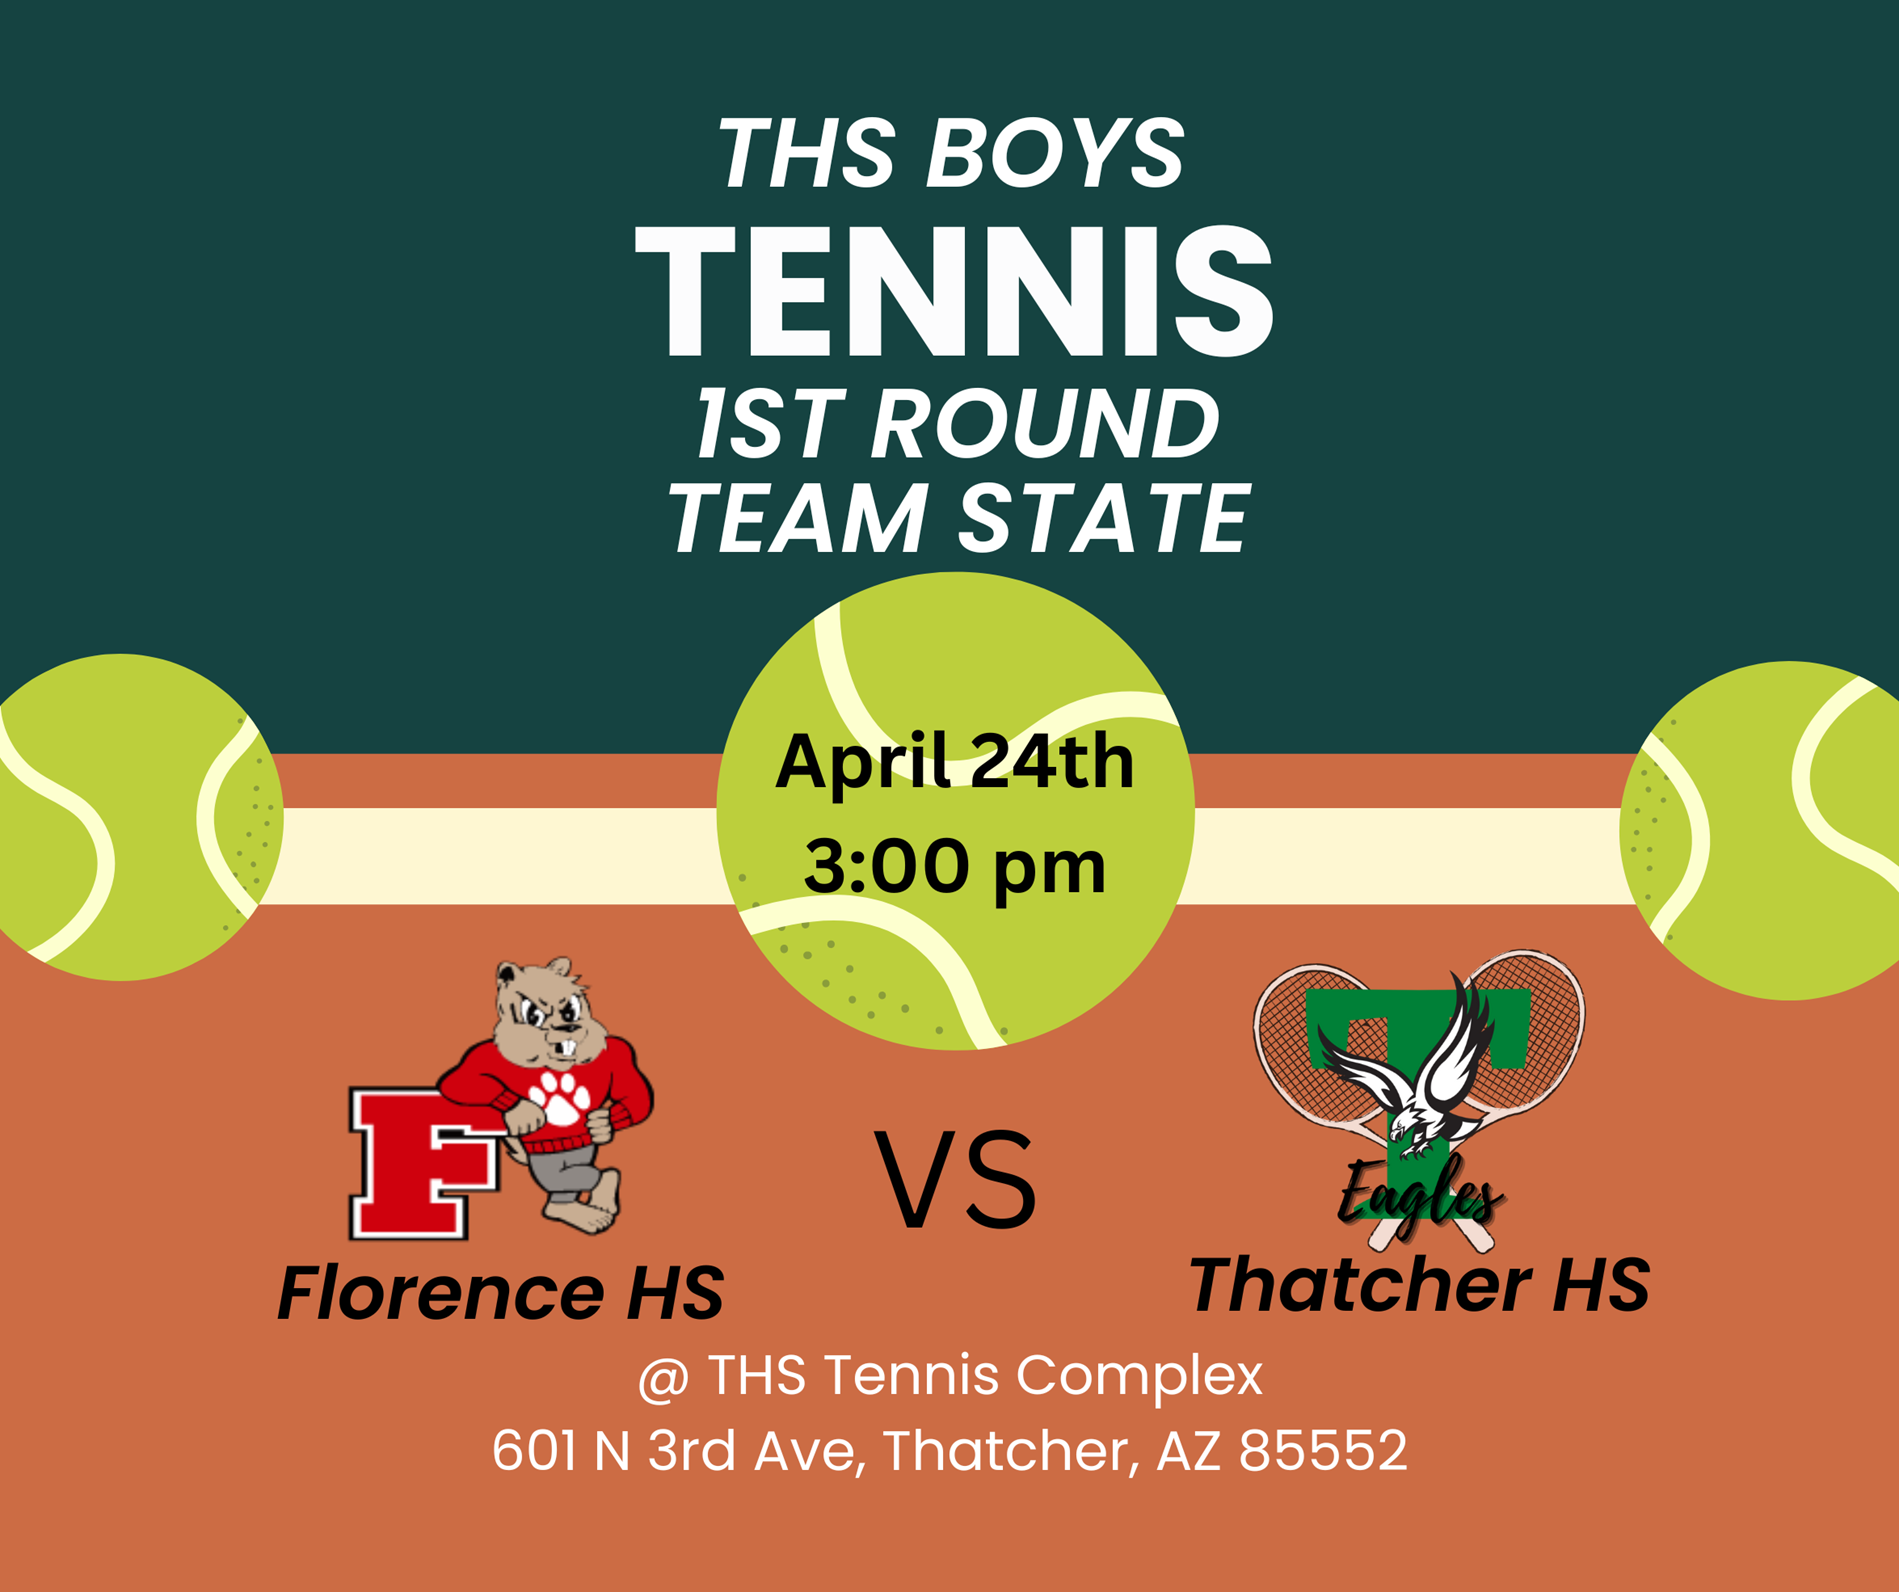 THS Boys 1st Round Team Tennis